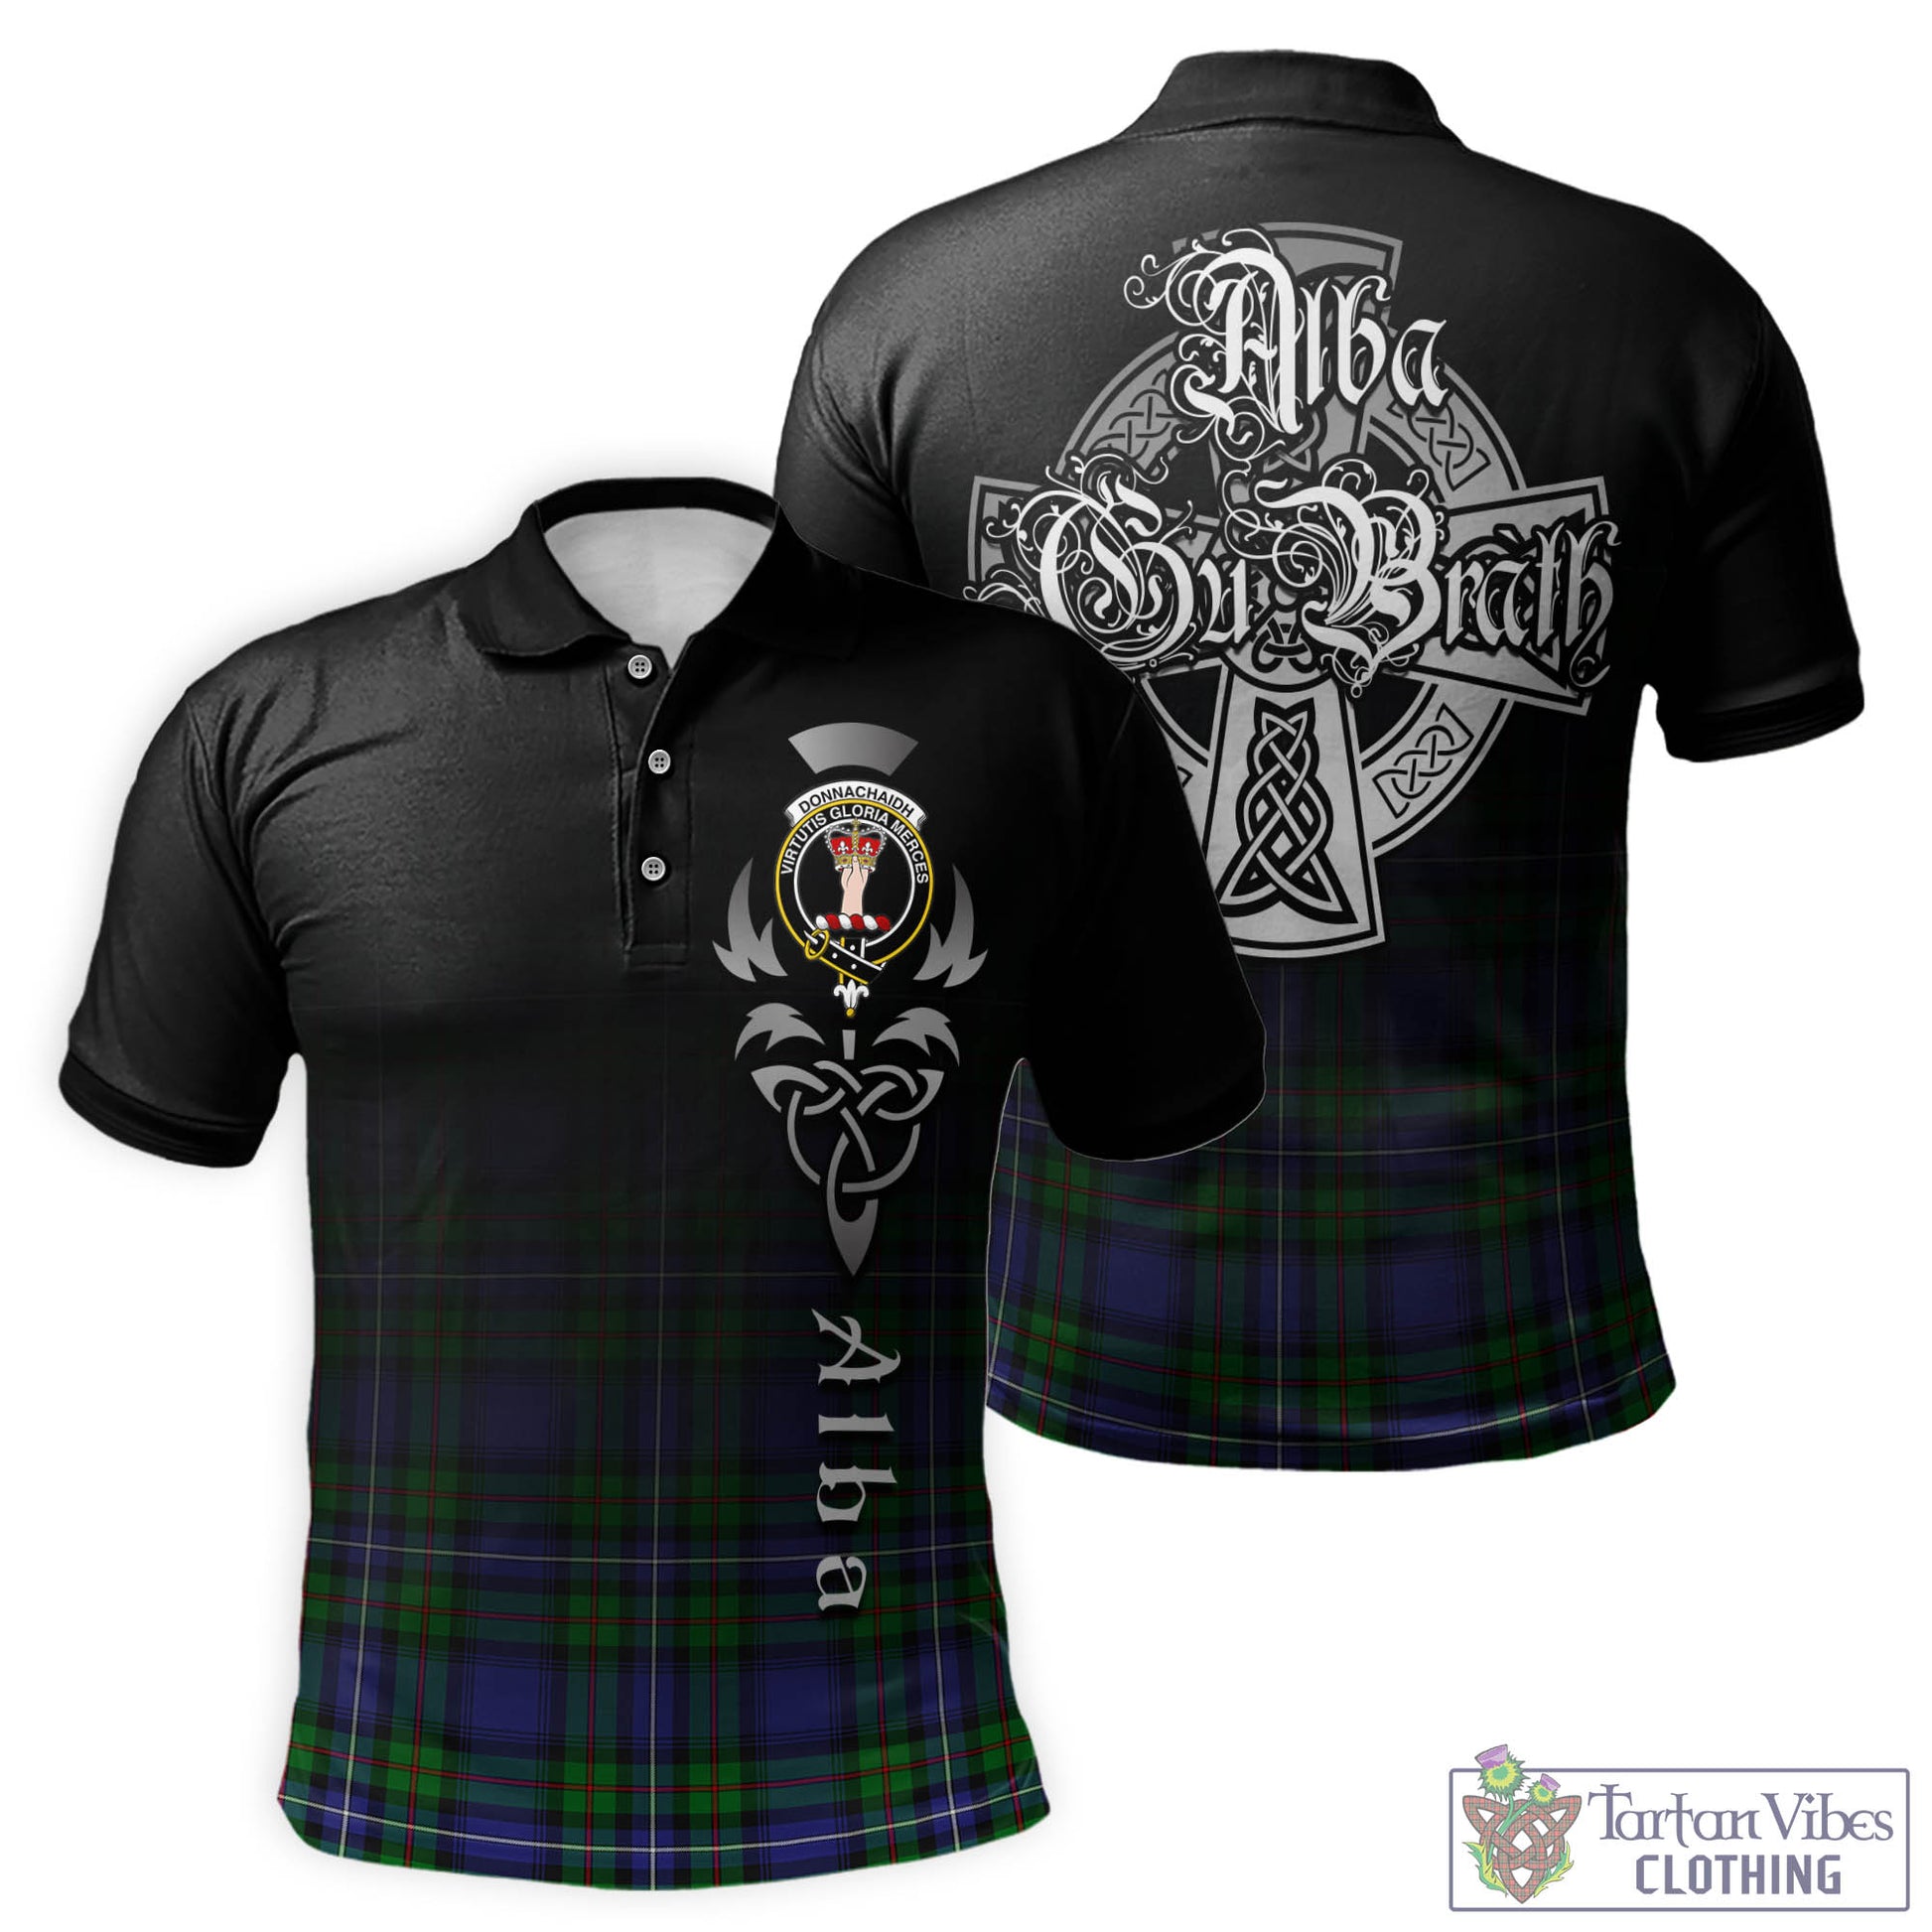 Tartan Vibes Clothing Donnachaidh Tartan Polo Shirt Featuring Alba Gu Brath Family Crest Celtic Inspired